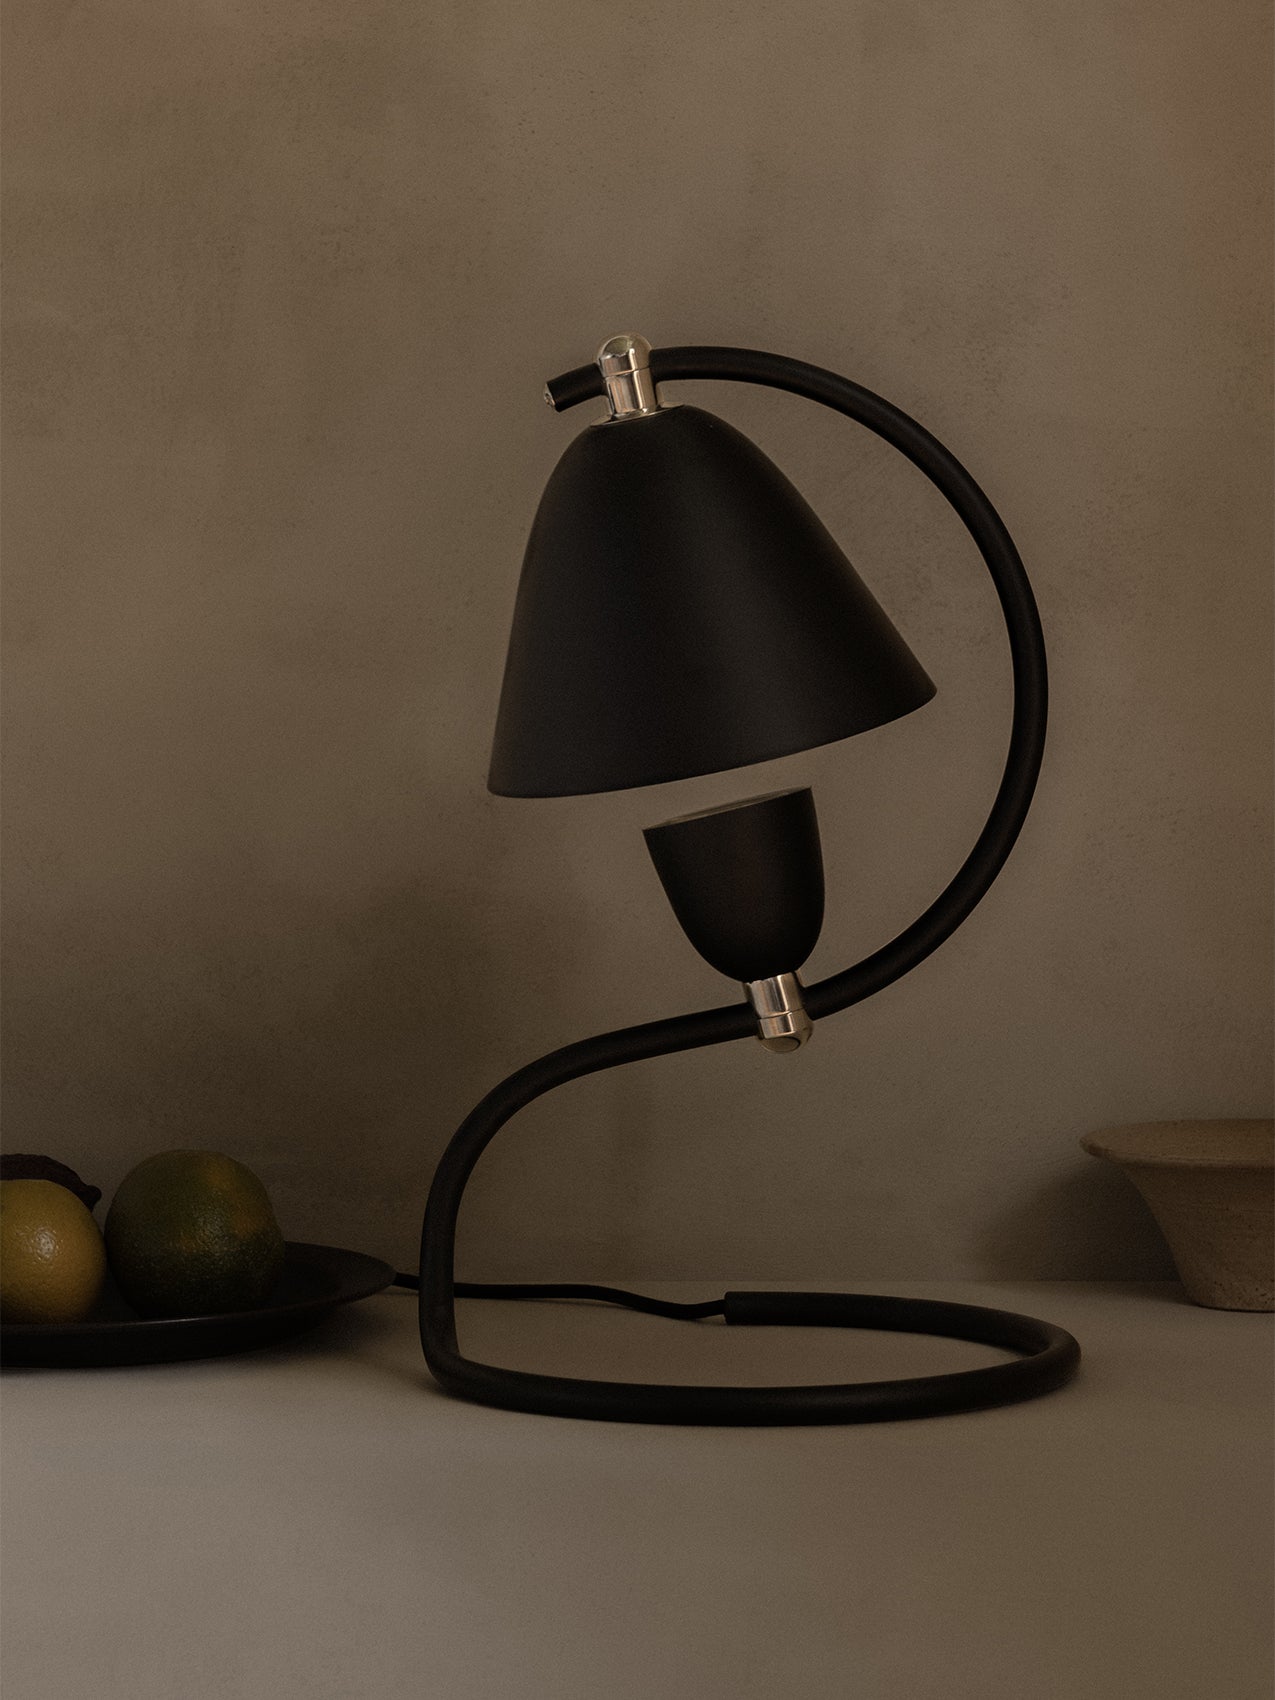 Klampenborg Table Lamp